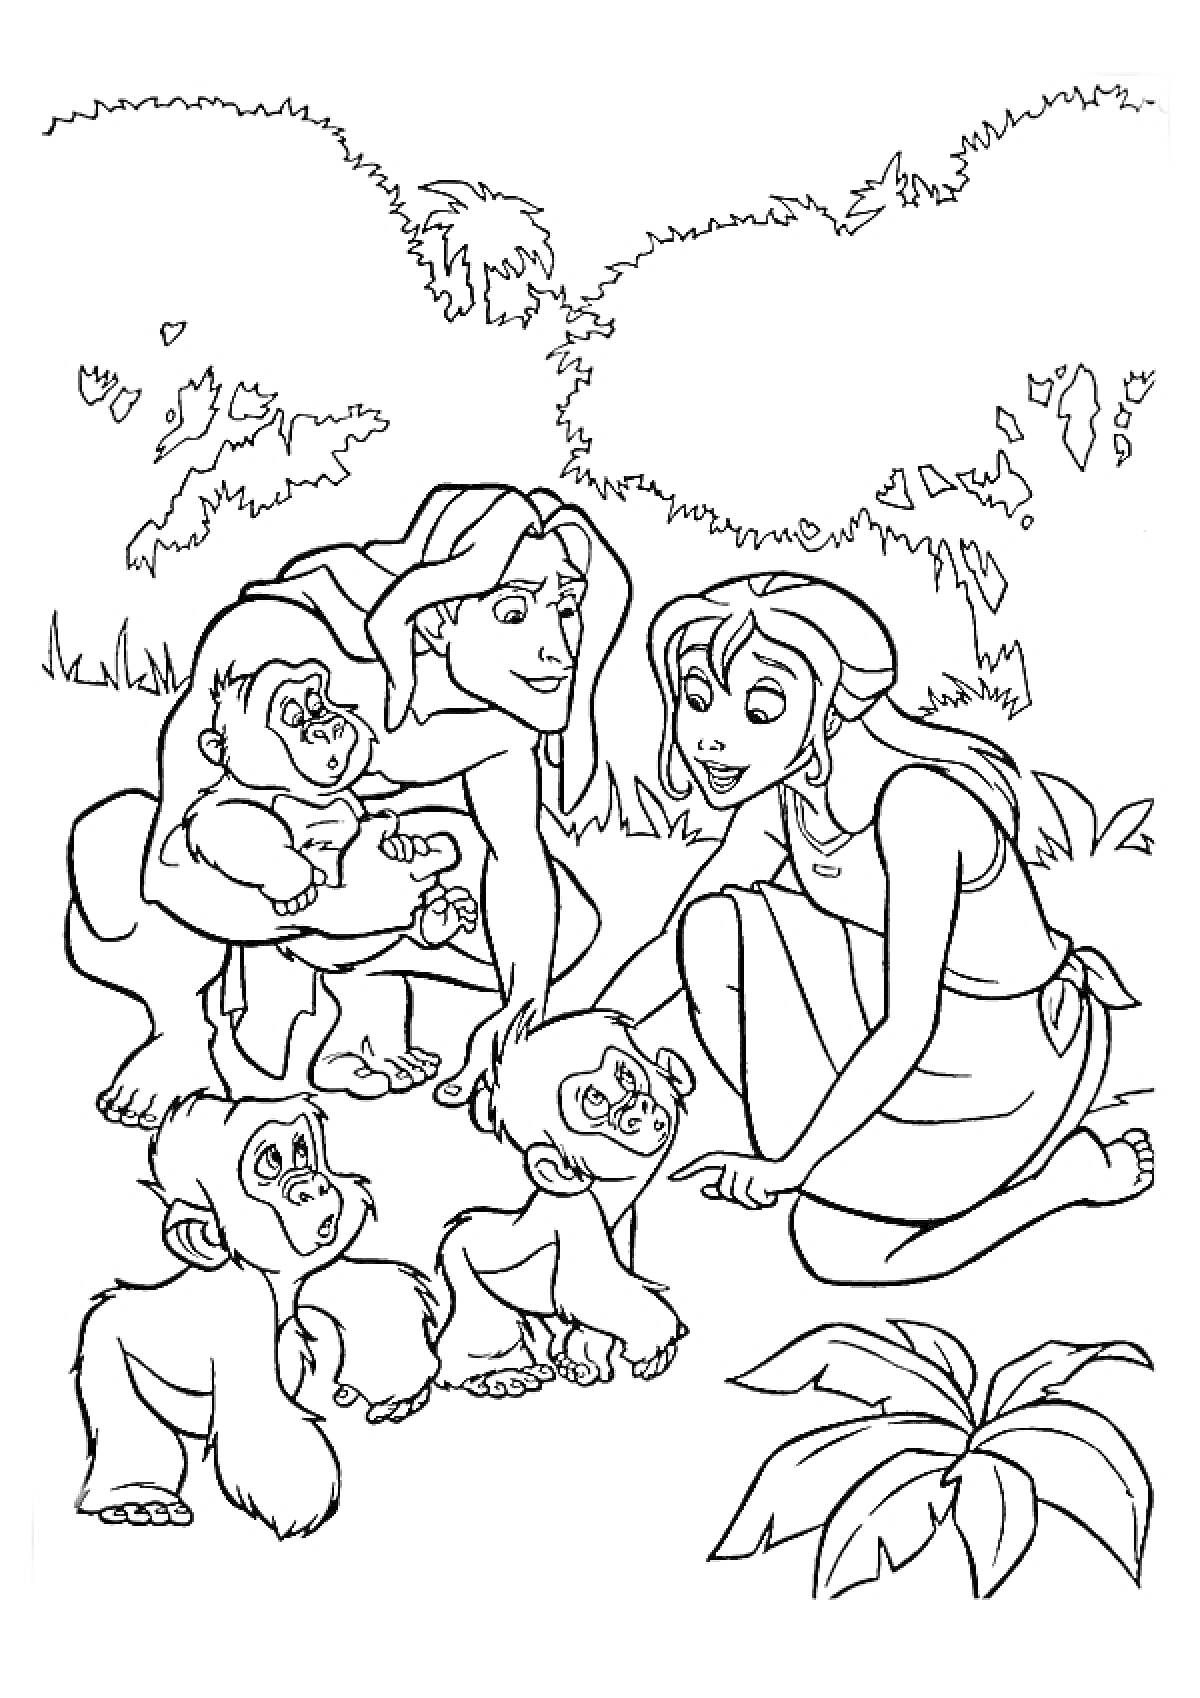 Тарзан и женщина с тремя малышами-обезьянками в джунглях